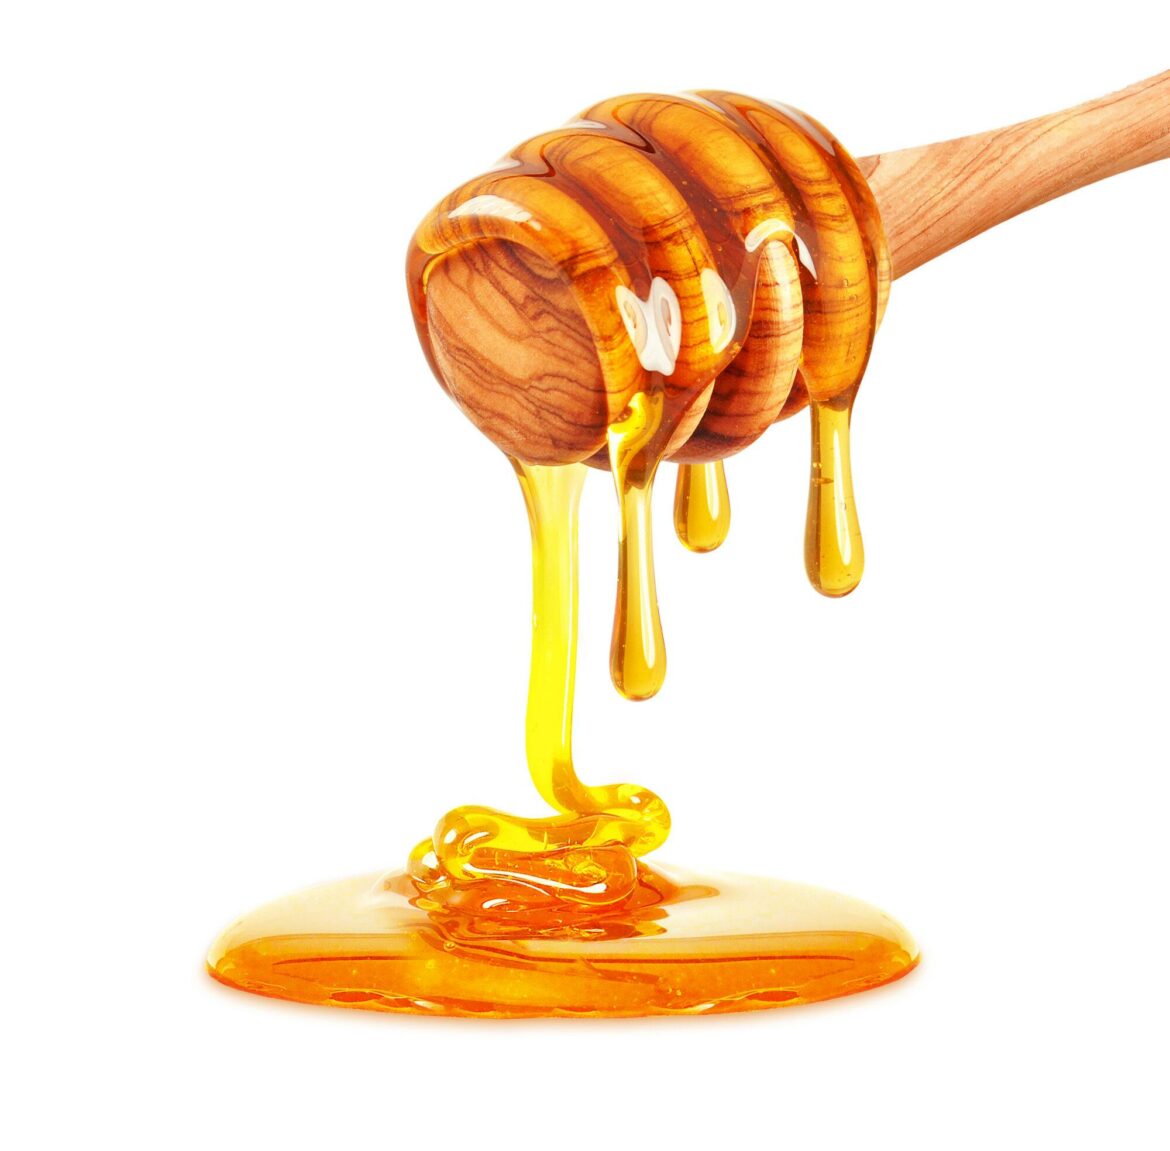 Seraing offre sa première récolte de miel à ses habitants